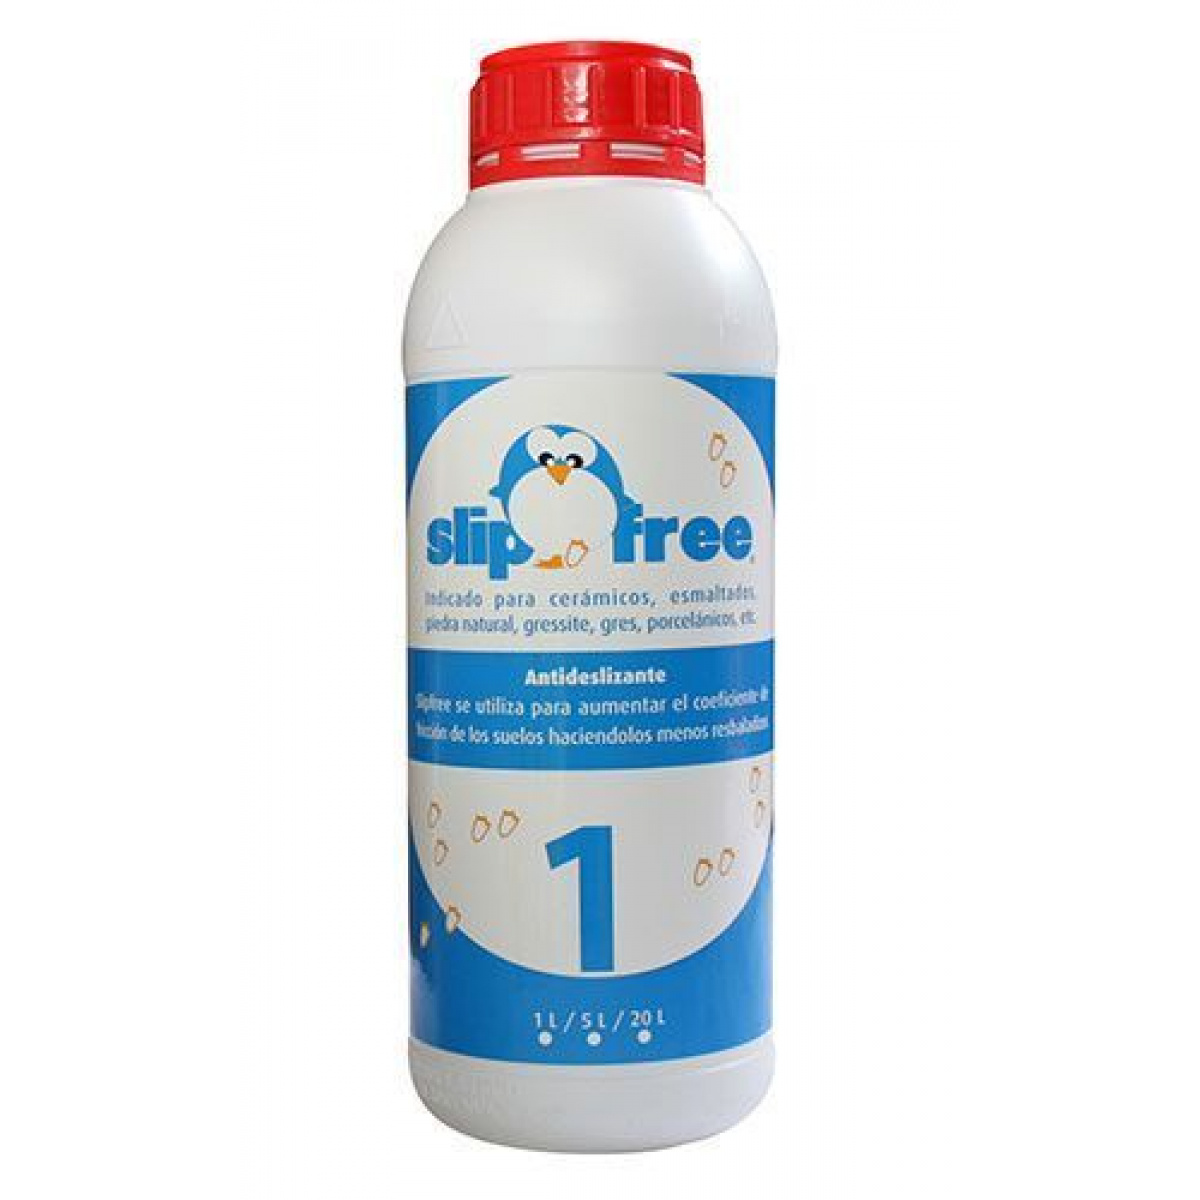 slipfree-1-producto-antideslizante-1-litro